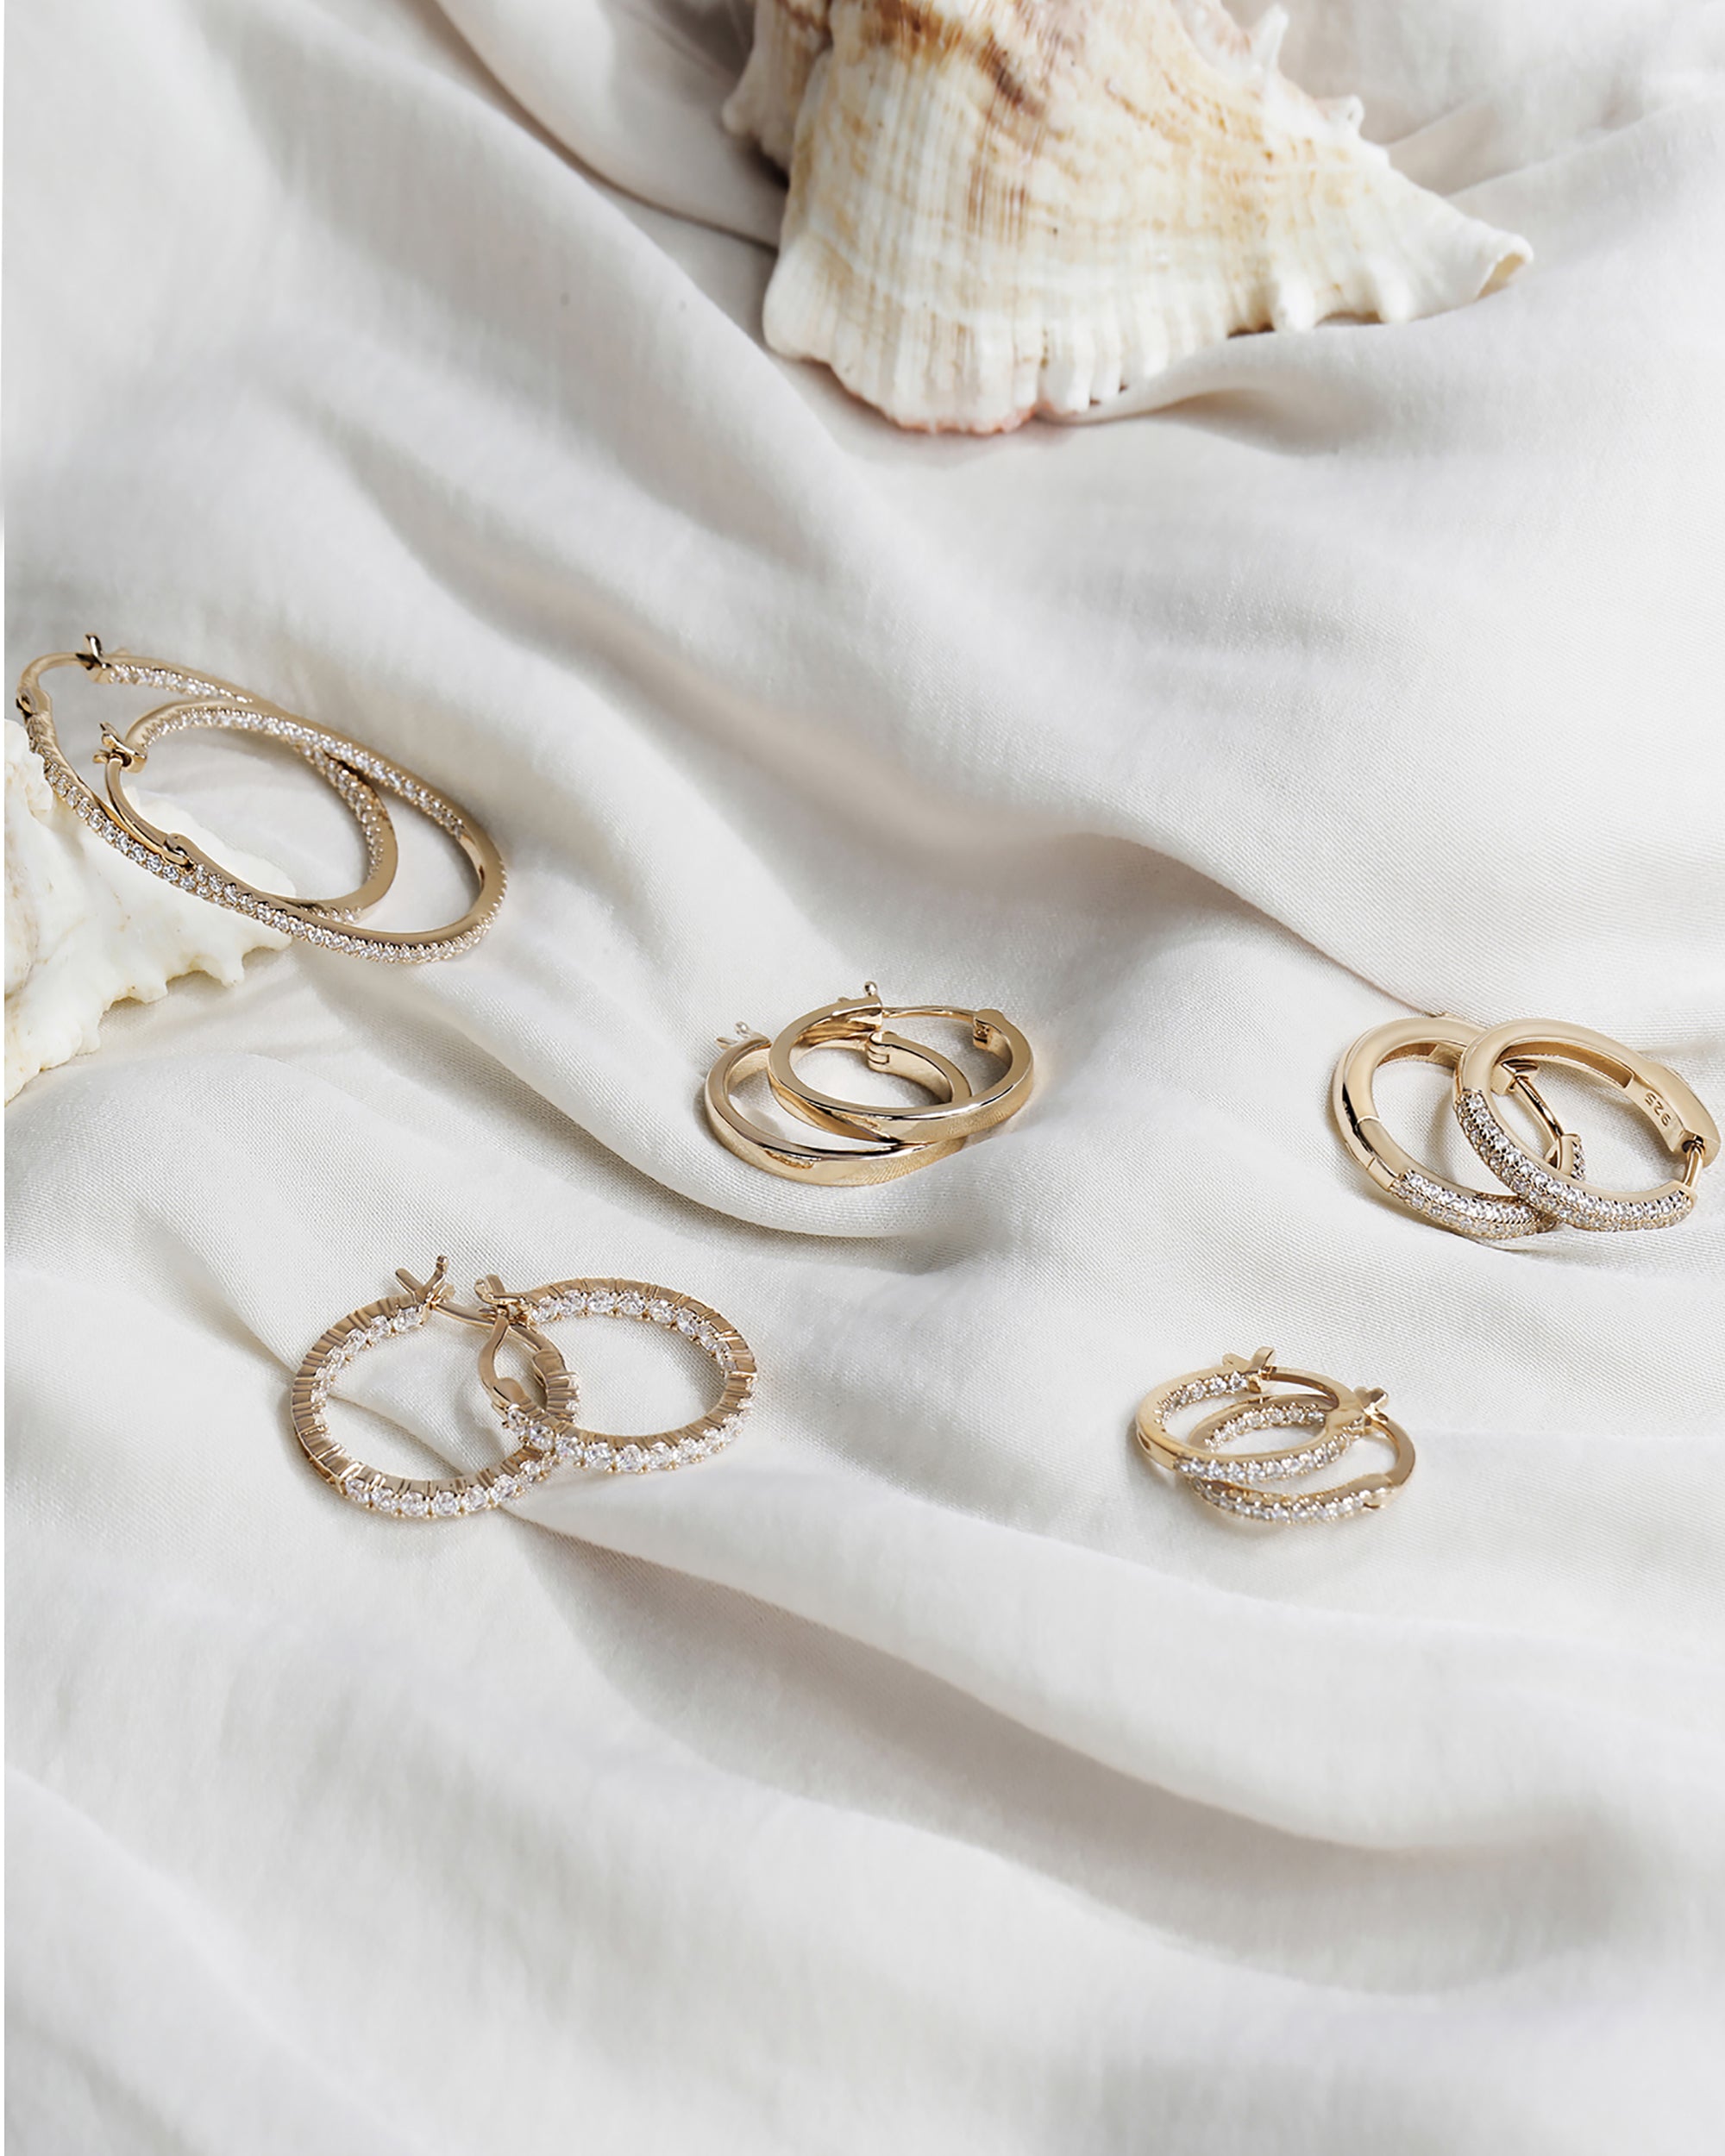 PAVOI 14K Gold Plated Hoop Earrings For Women | 2mm Thick Infinity Gold  Hoops Women Earrings | Gold Plated Loop Earrings For Women | Lightweight  Hoop